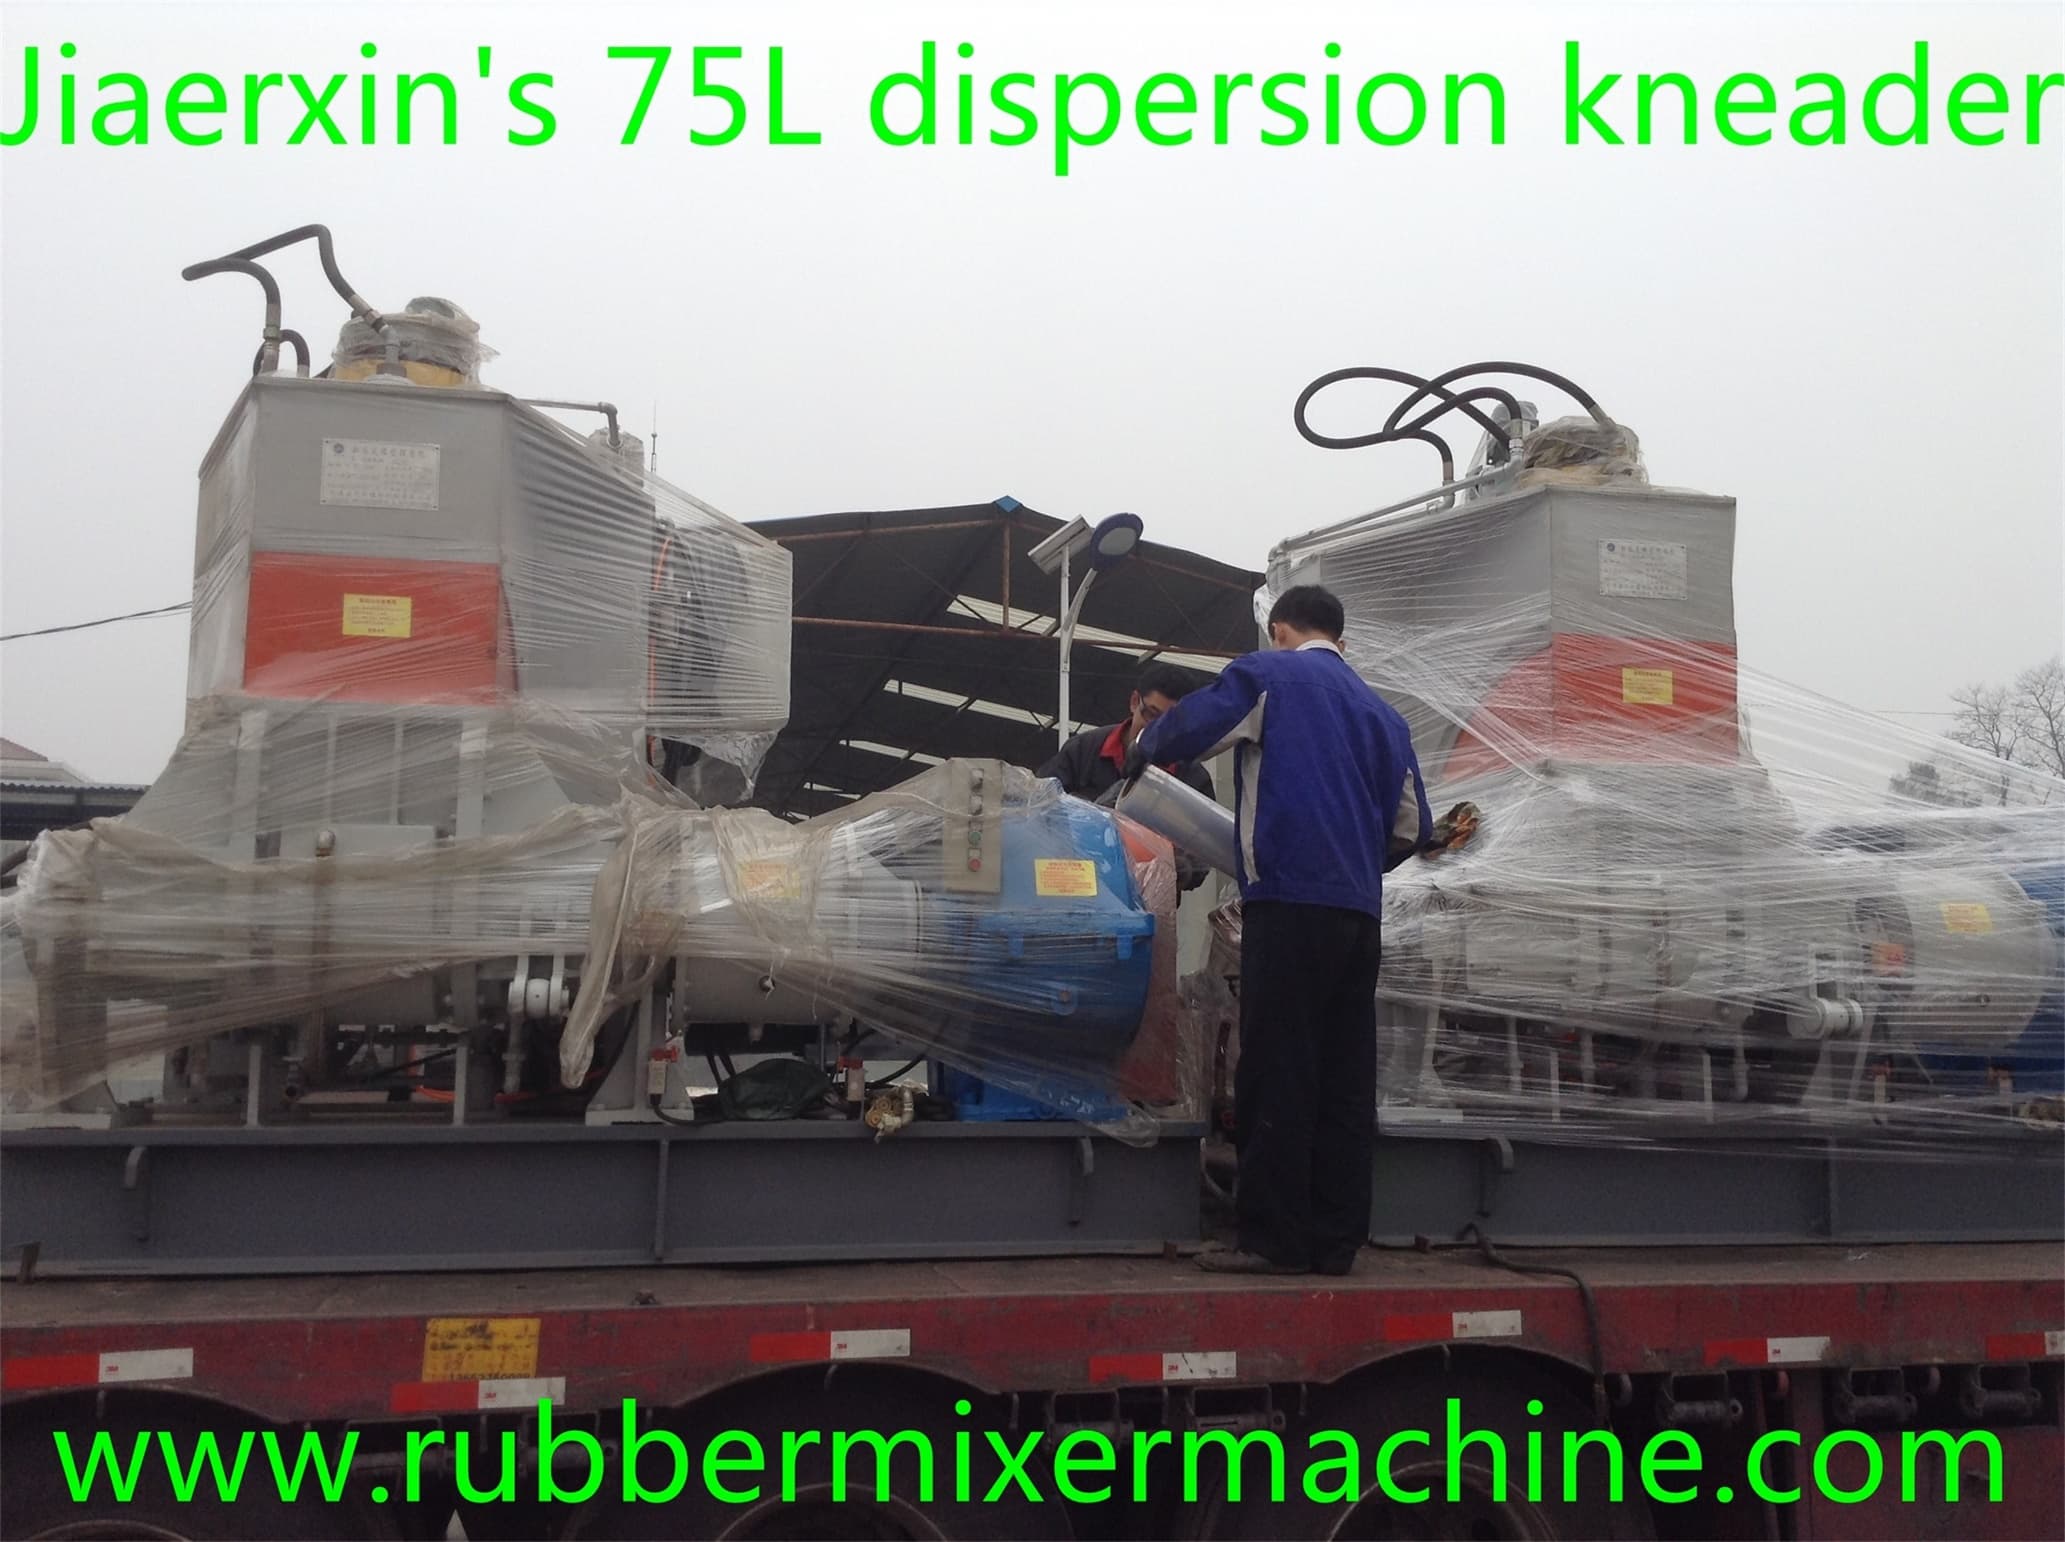 75L dispersion kneader delivery